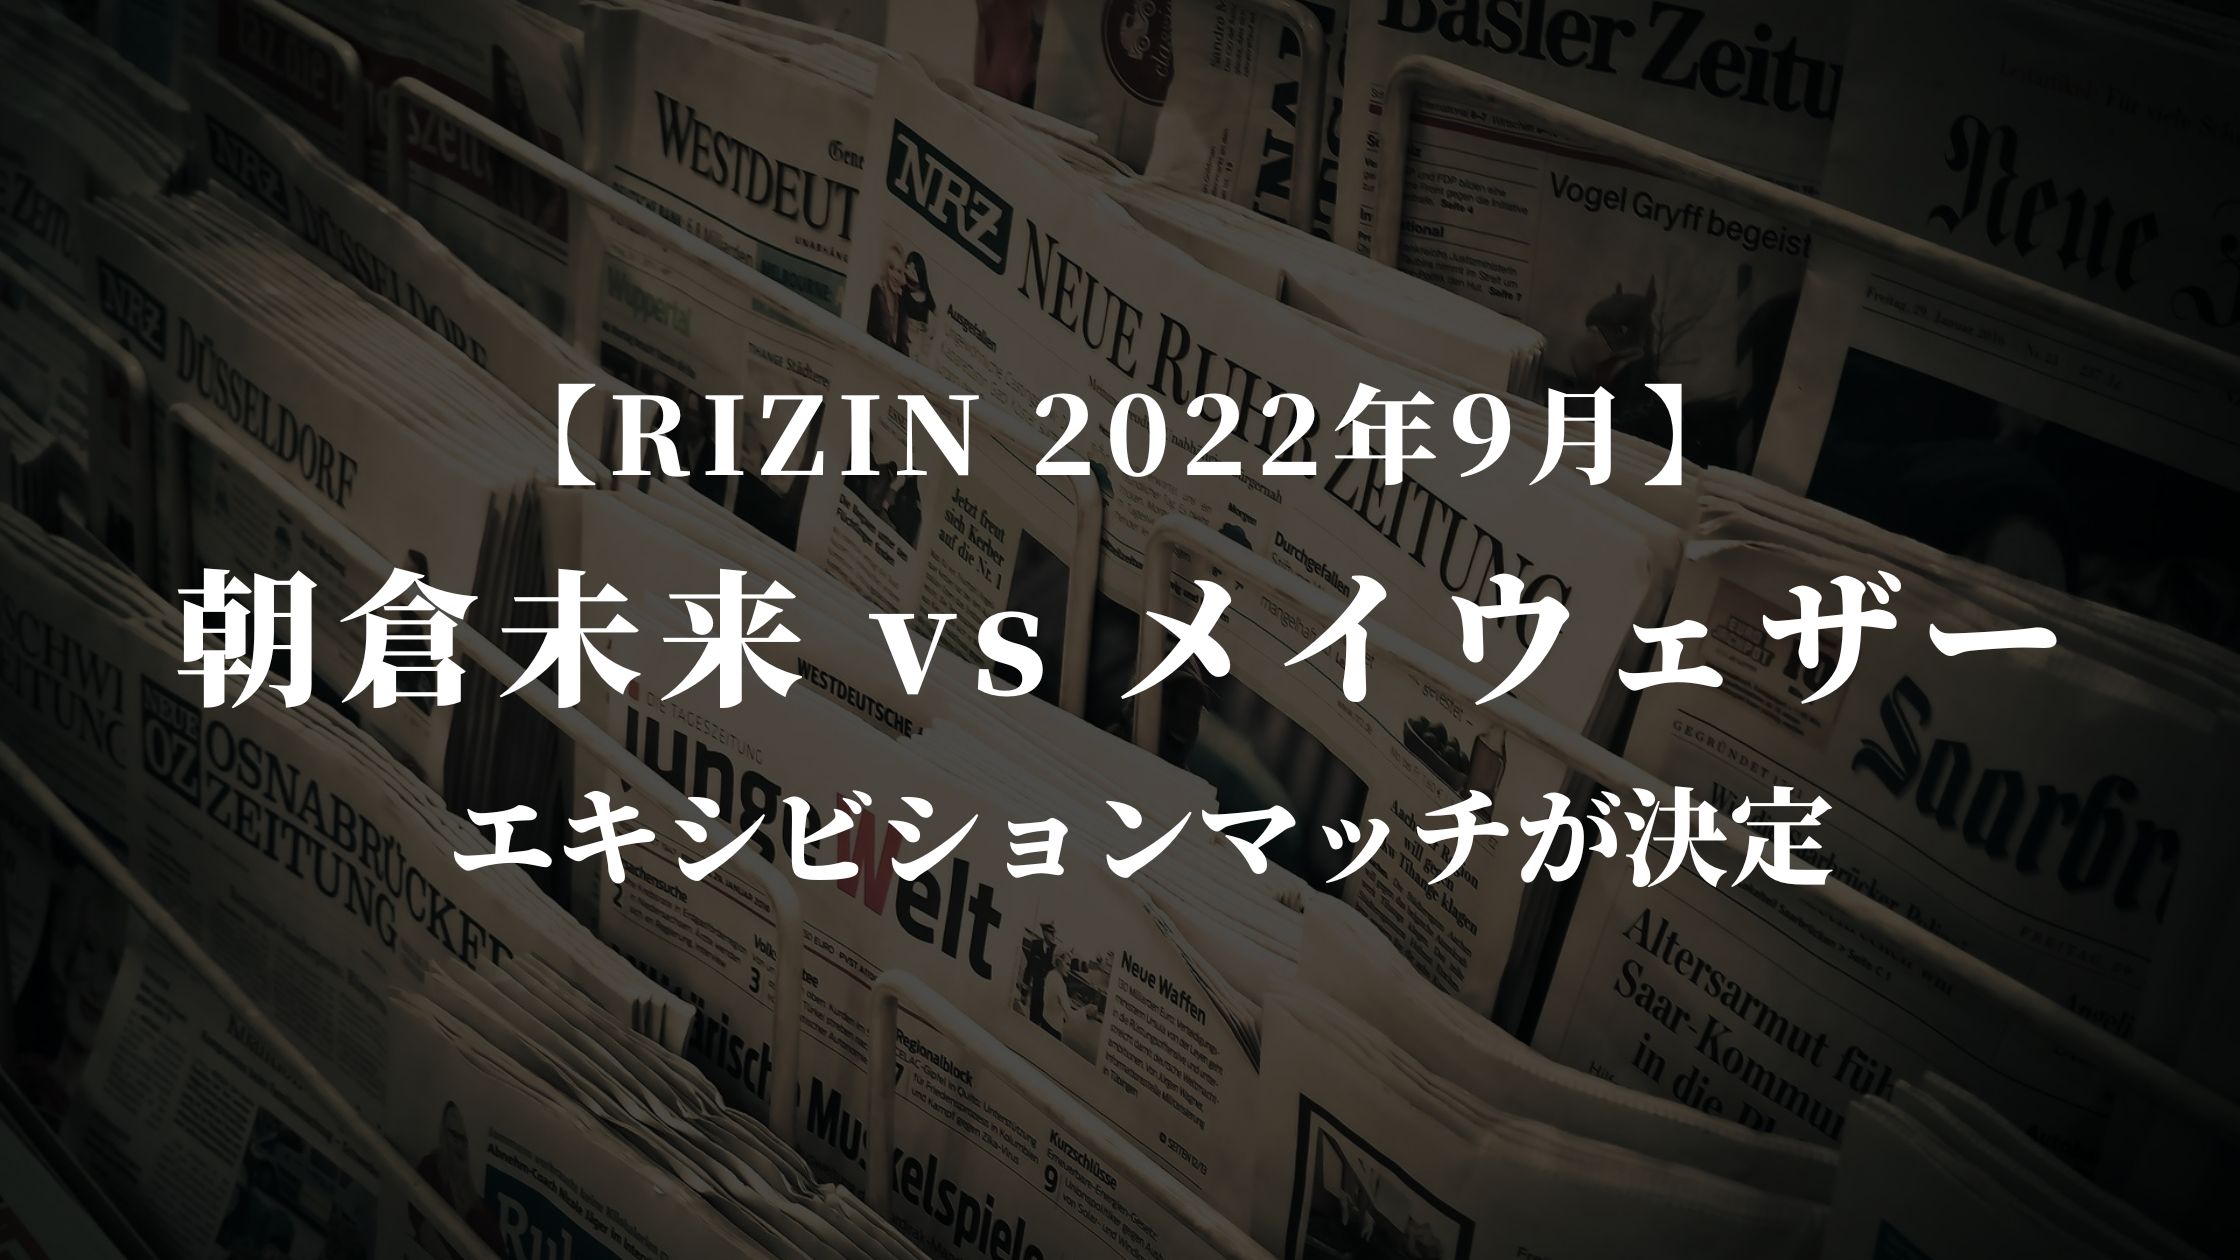 【2022年9月 RIZIN】朝倉未来vsメイウェザーが決定「世界に名を売るために」